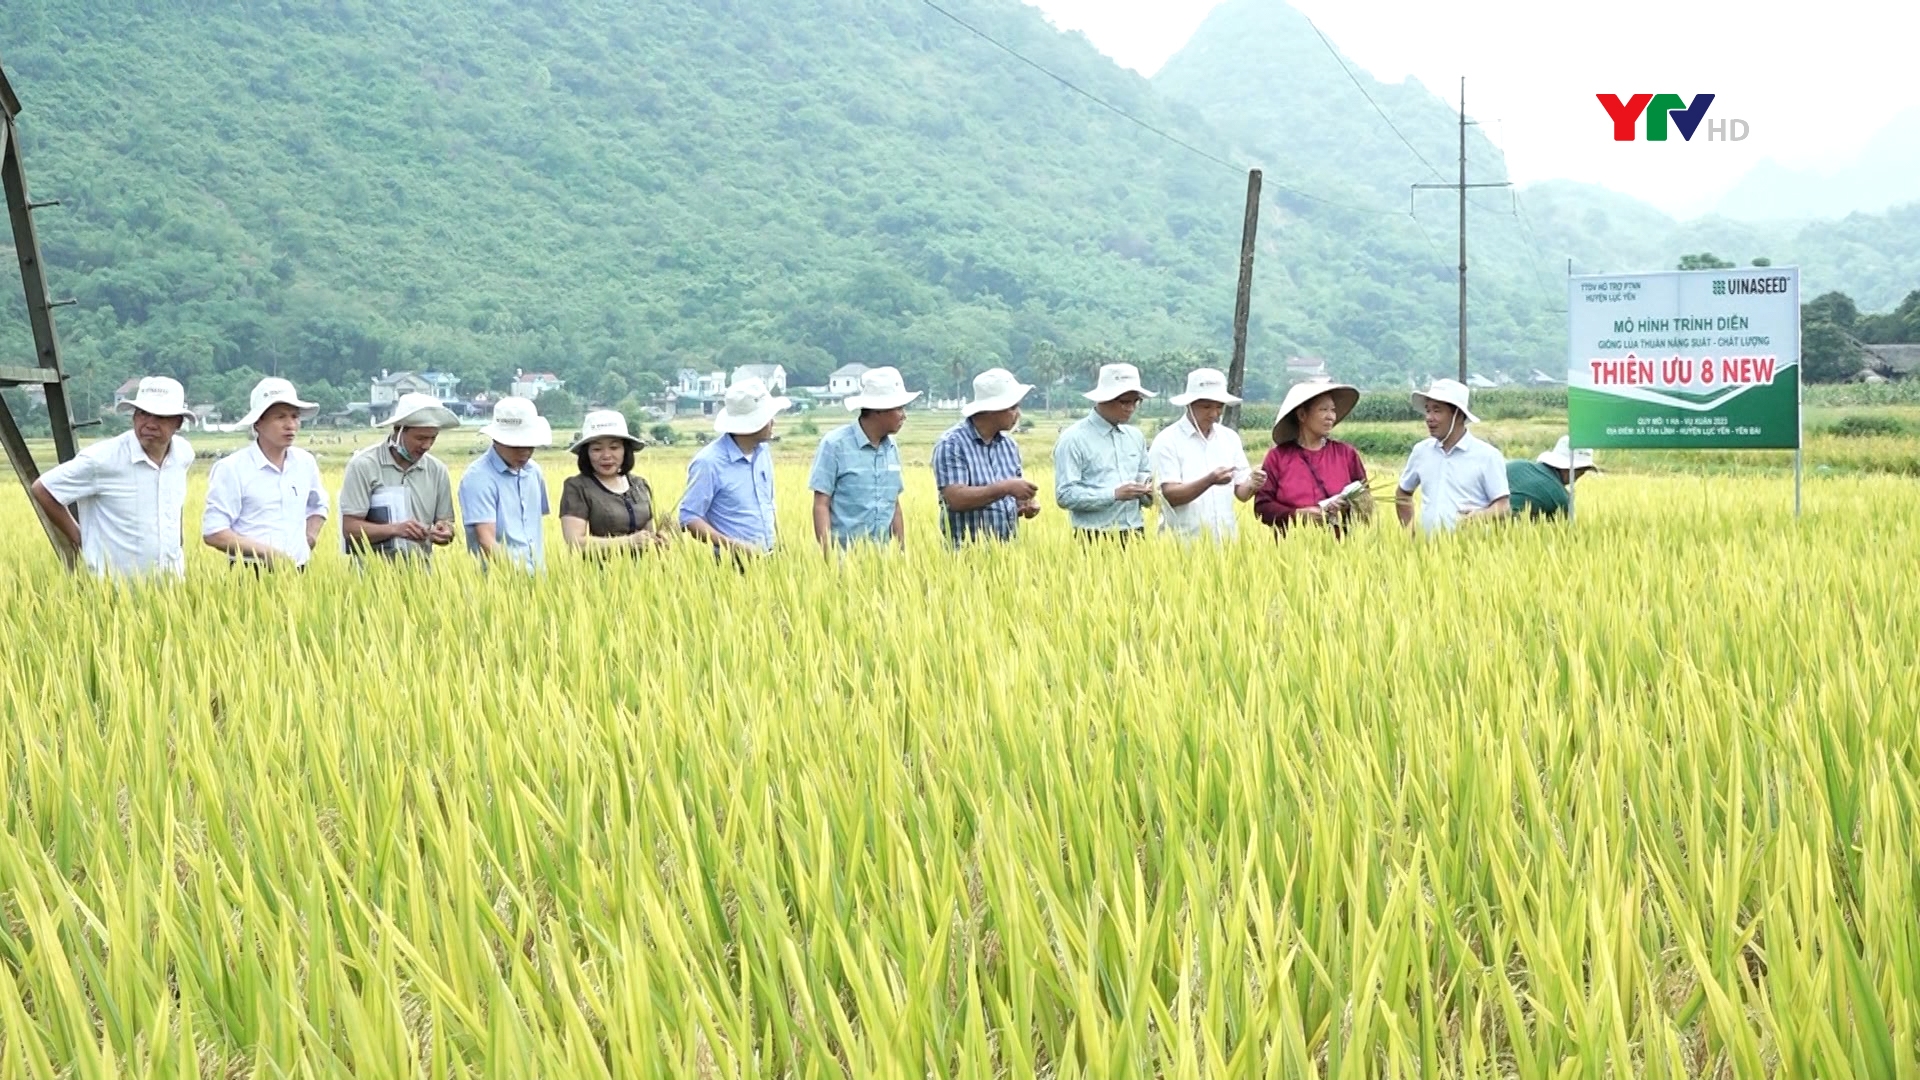 Đánh giá mô hình trình diễn giống lúa Thiên ưu 8 thế hệ mới và Thụy Hương 308 tại huyện Lục Yên